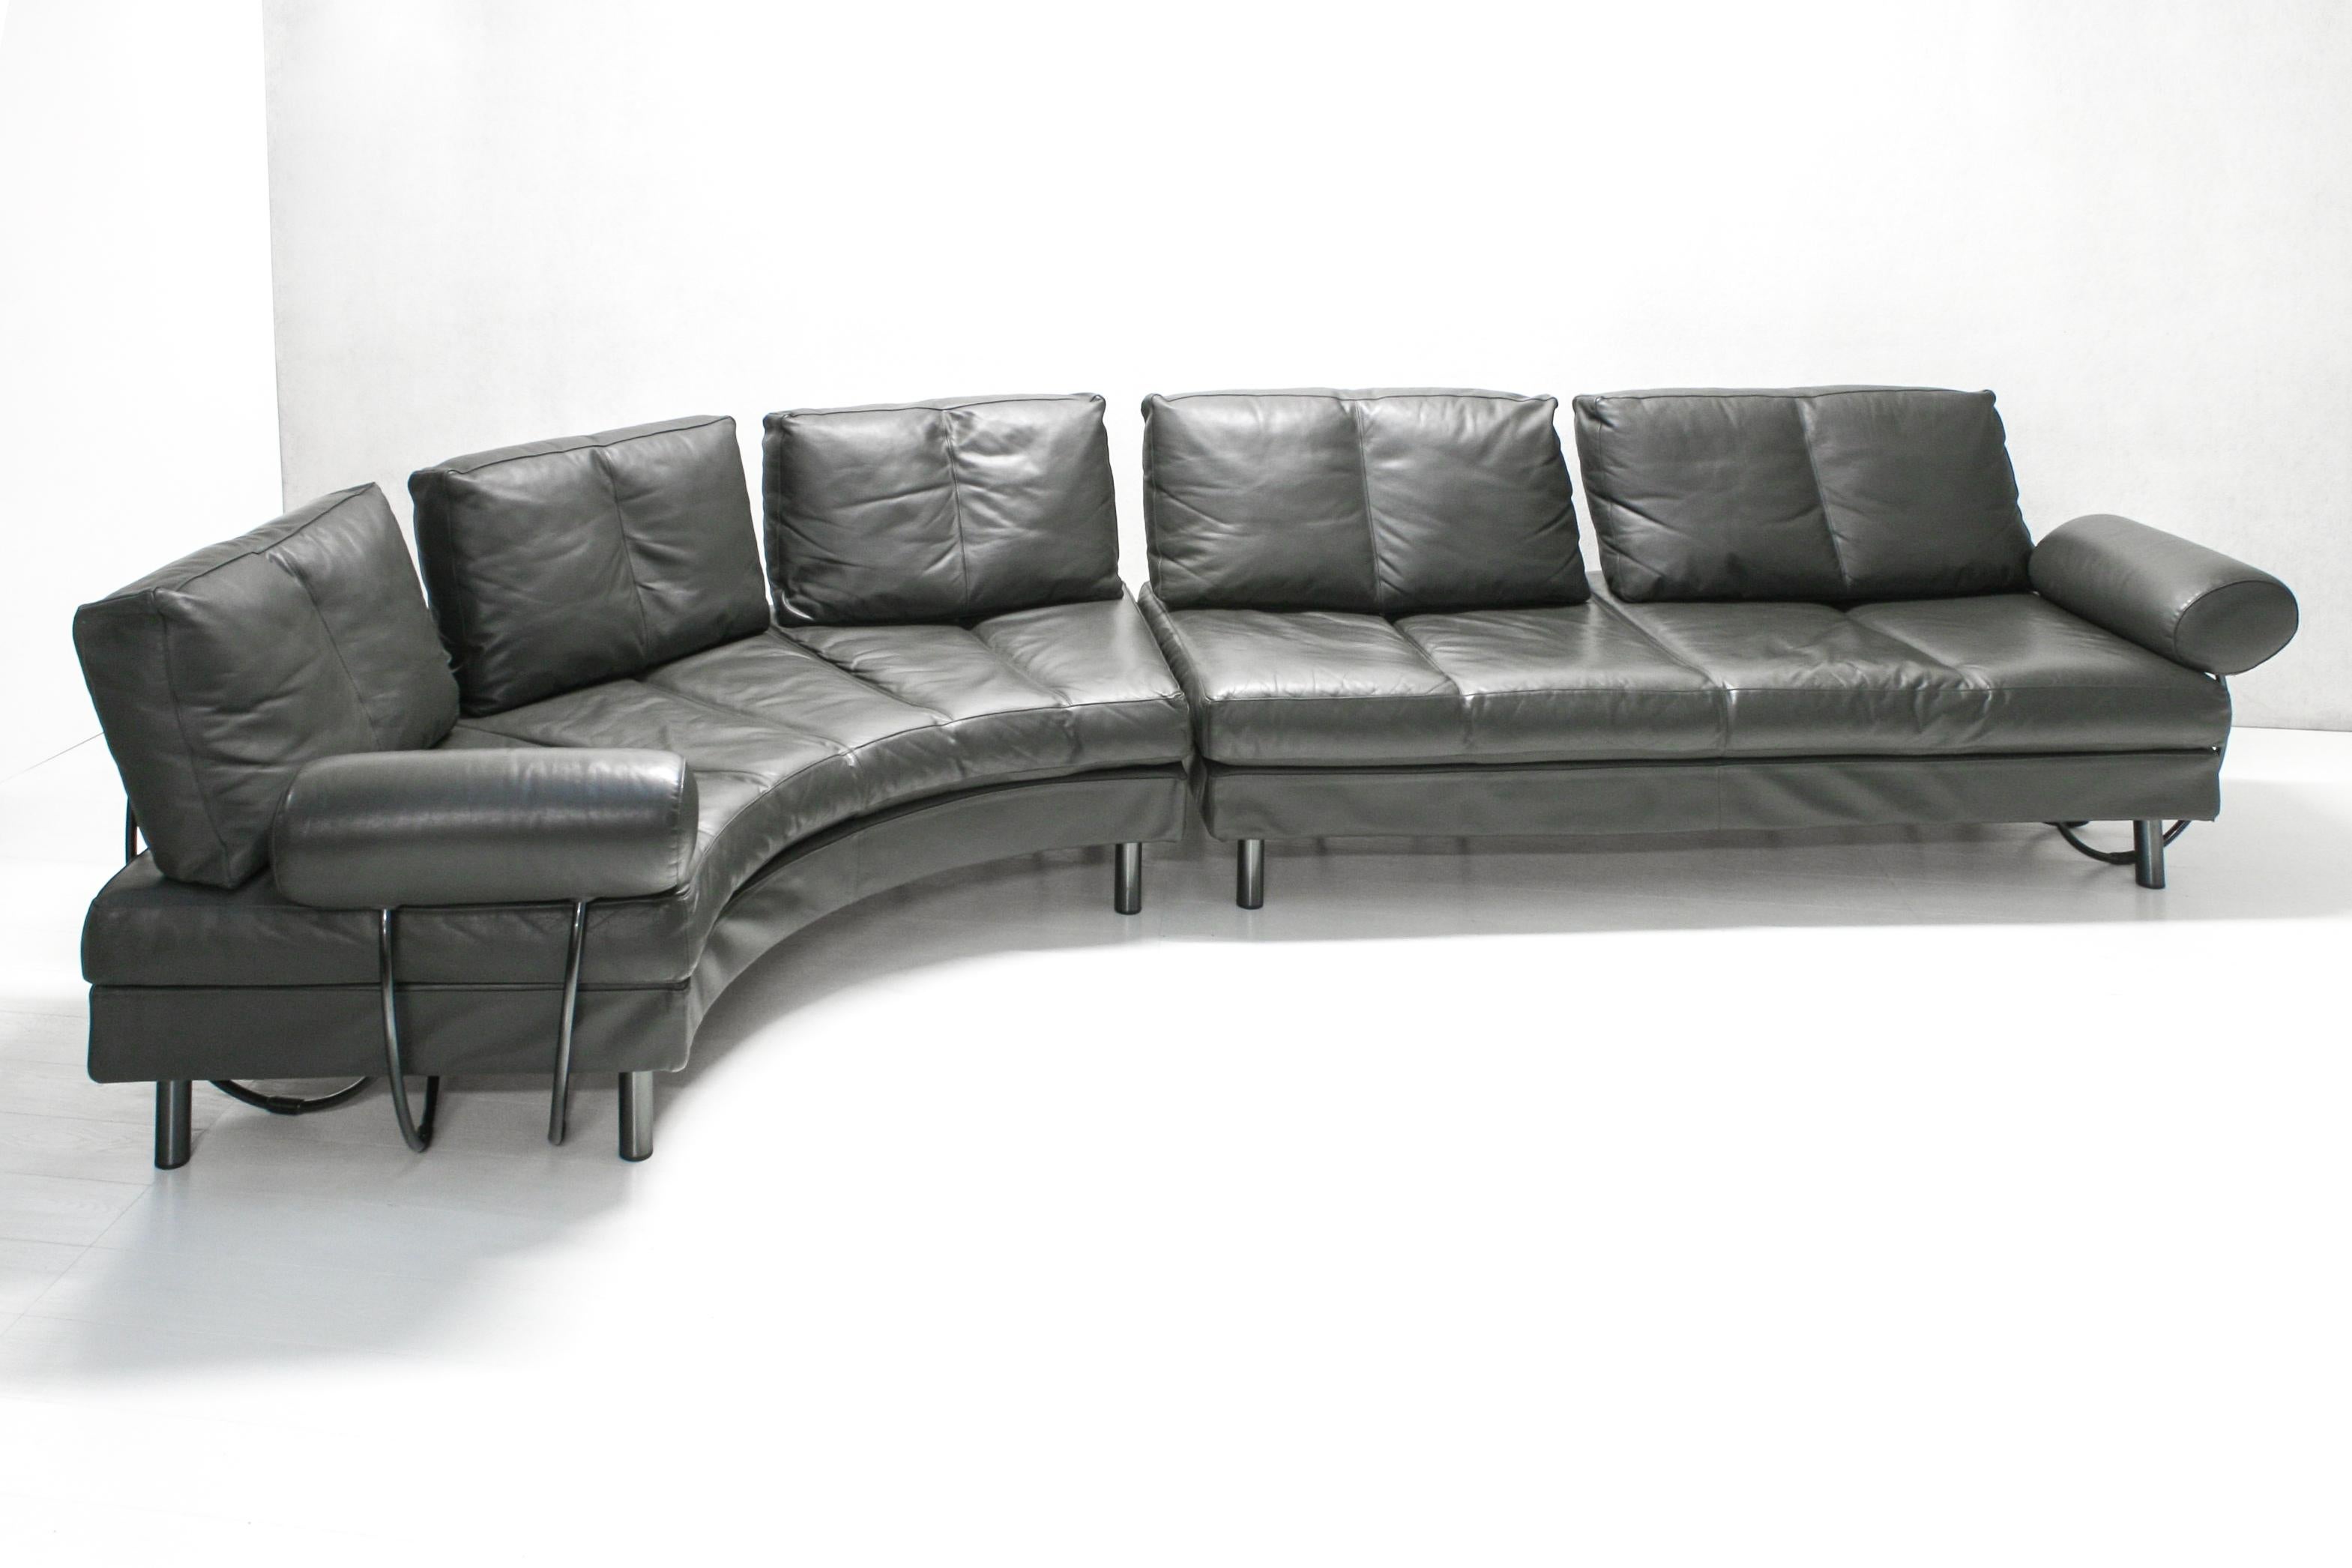 Steel Modular Europa Sofa by G. Gualtierotti & Alessandro Mazzoni for Zanotta, 1988